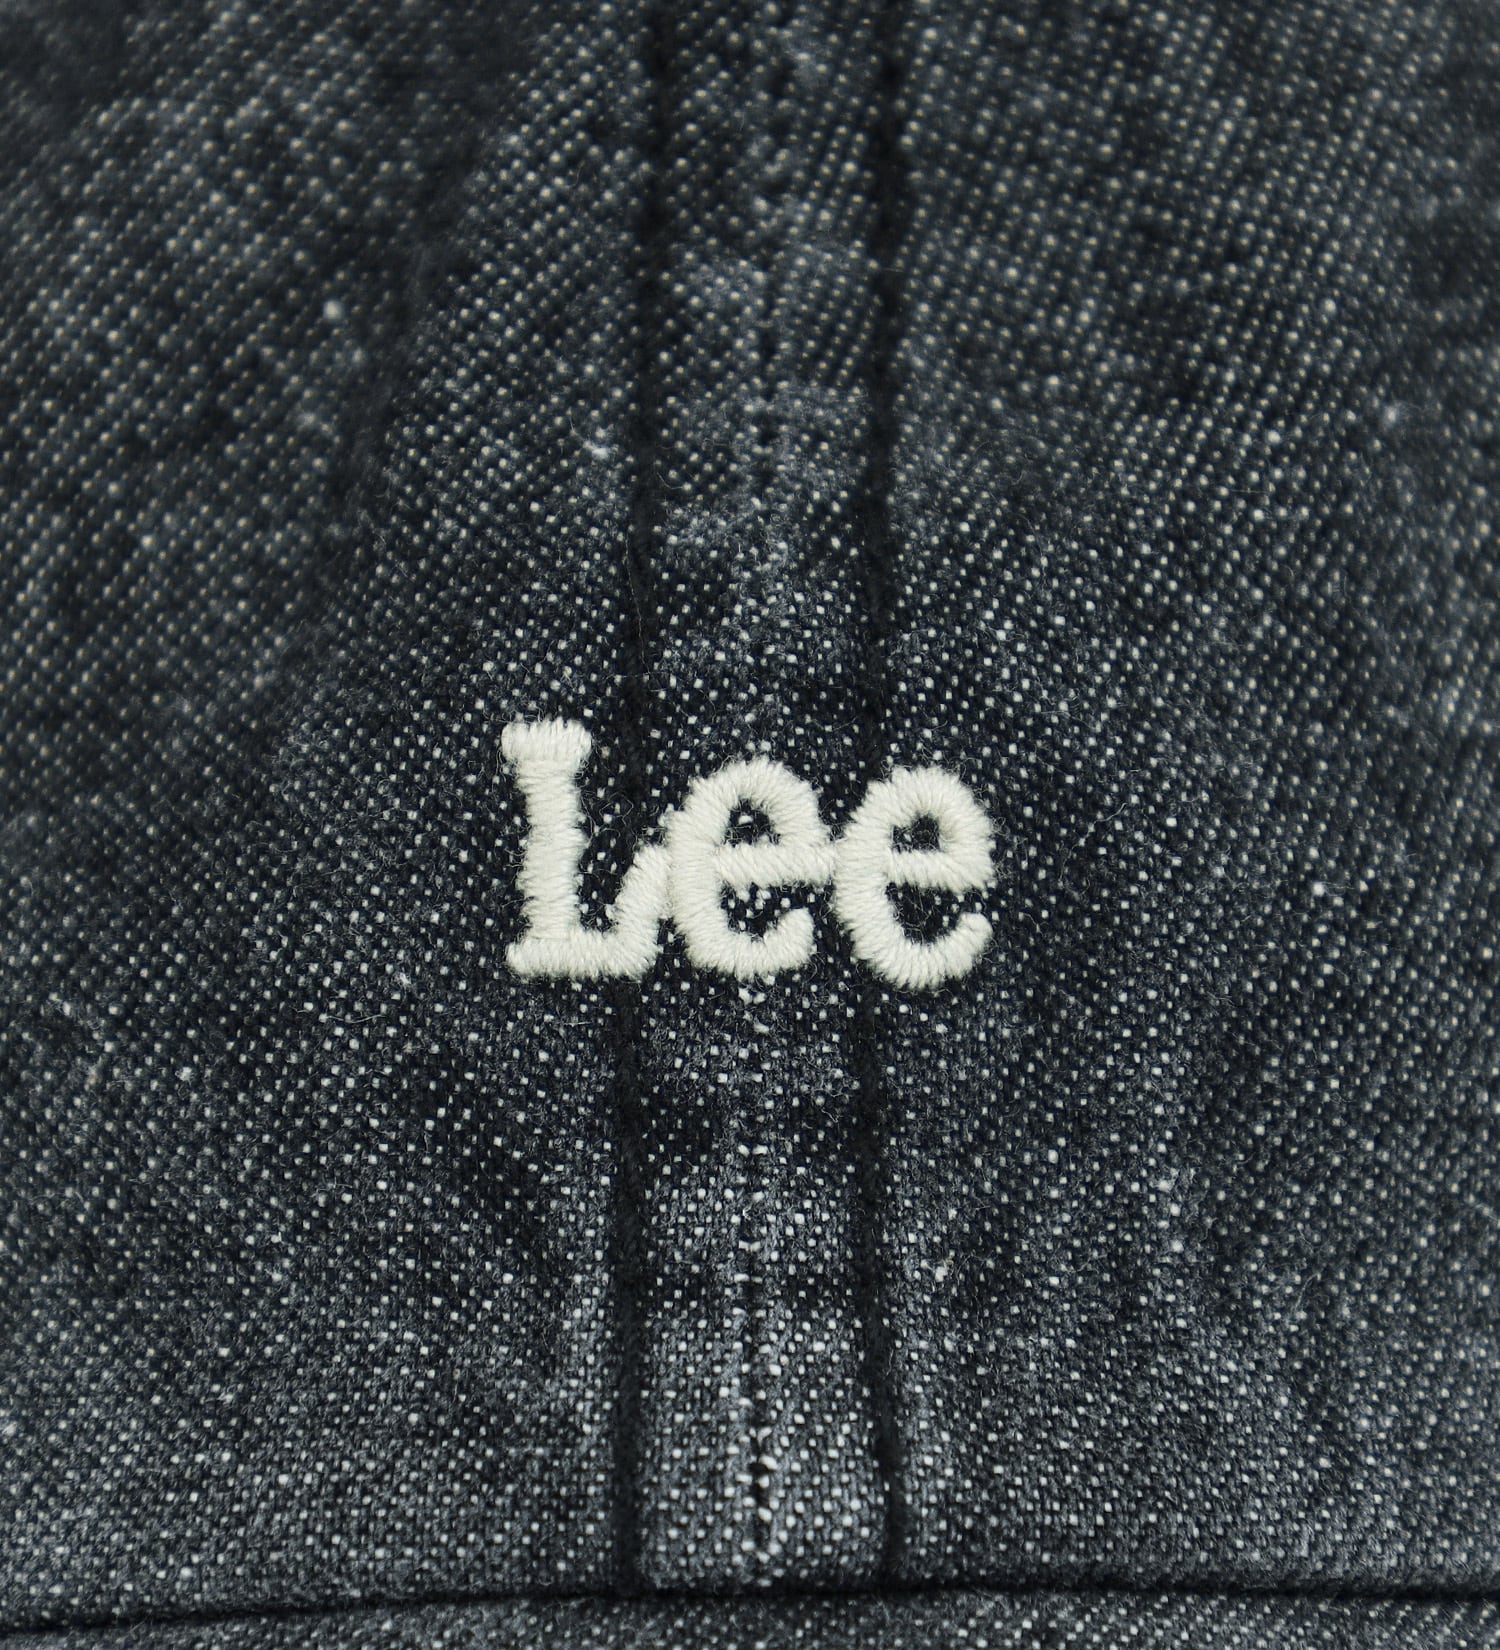 Lee(リー)のデニム ロゴキャップ|帽子/キャップ/レディース|ブラックデニム